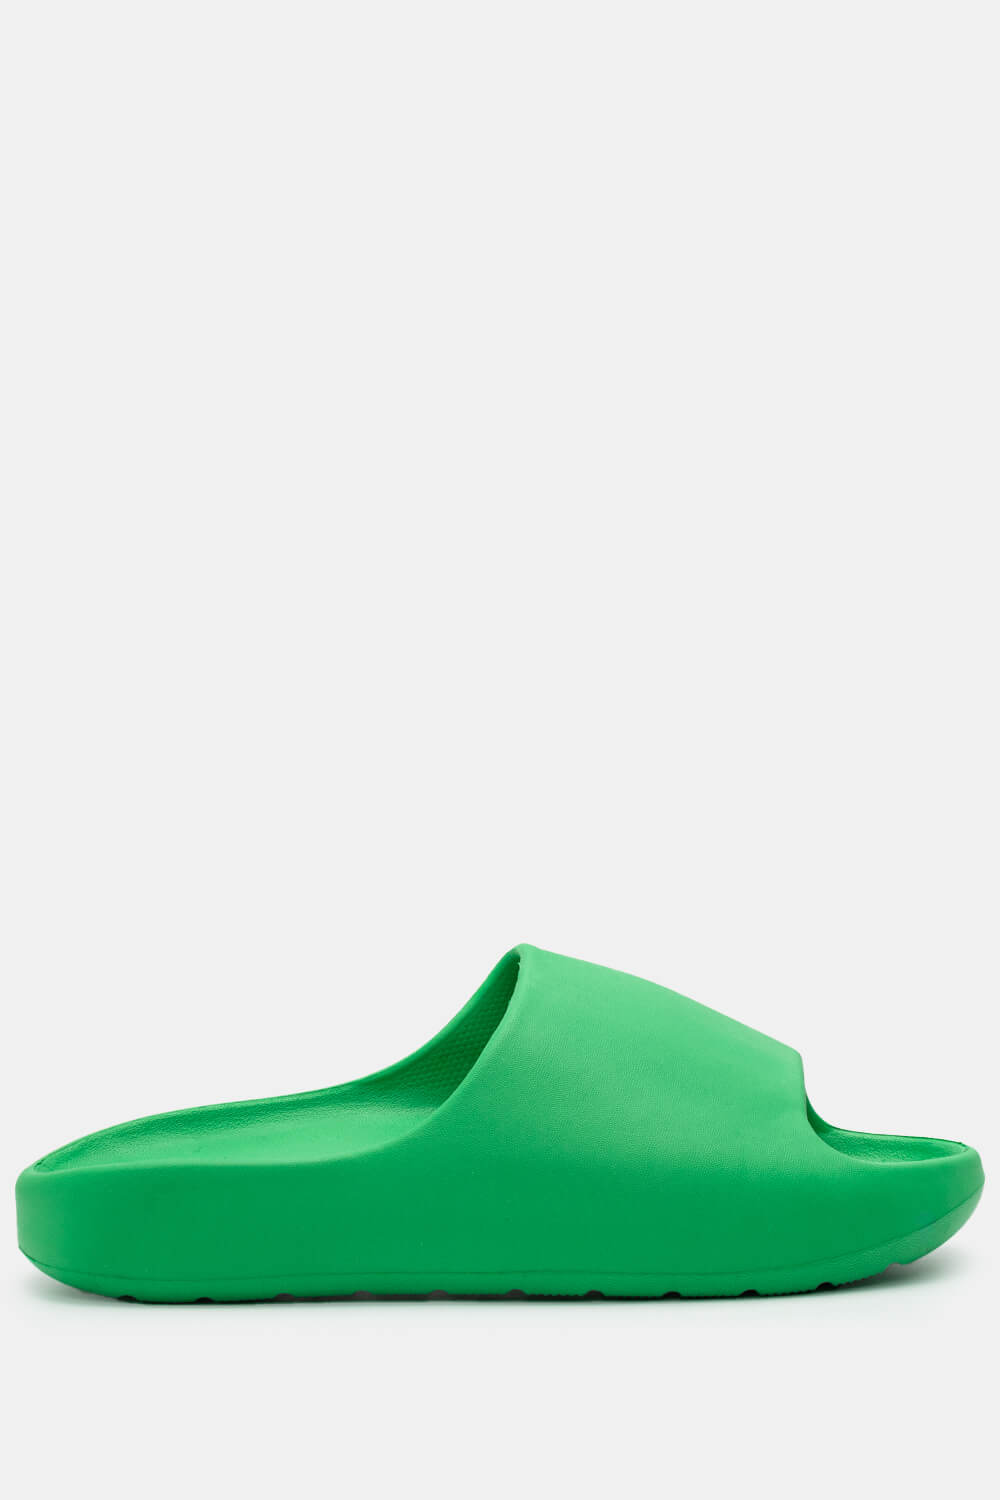 ΠΑΠΟΥΤΣΙΑ > Jelly Shoes Παντόφλες Δίσολες Μονόχρωμες - Πράσινο